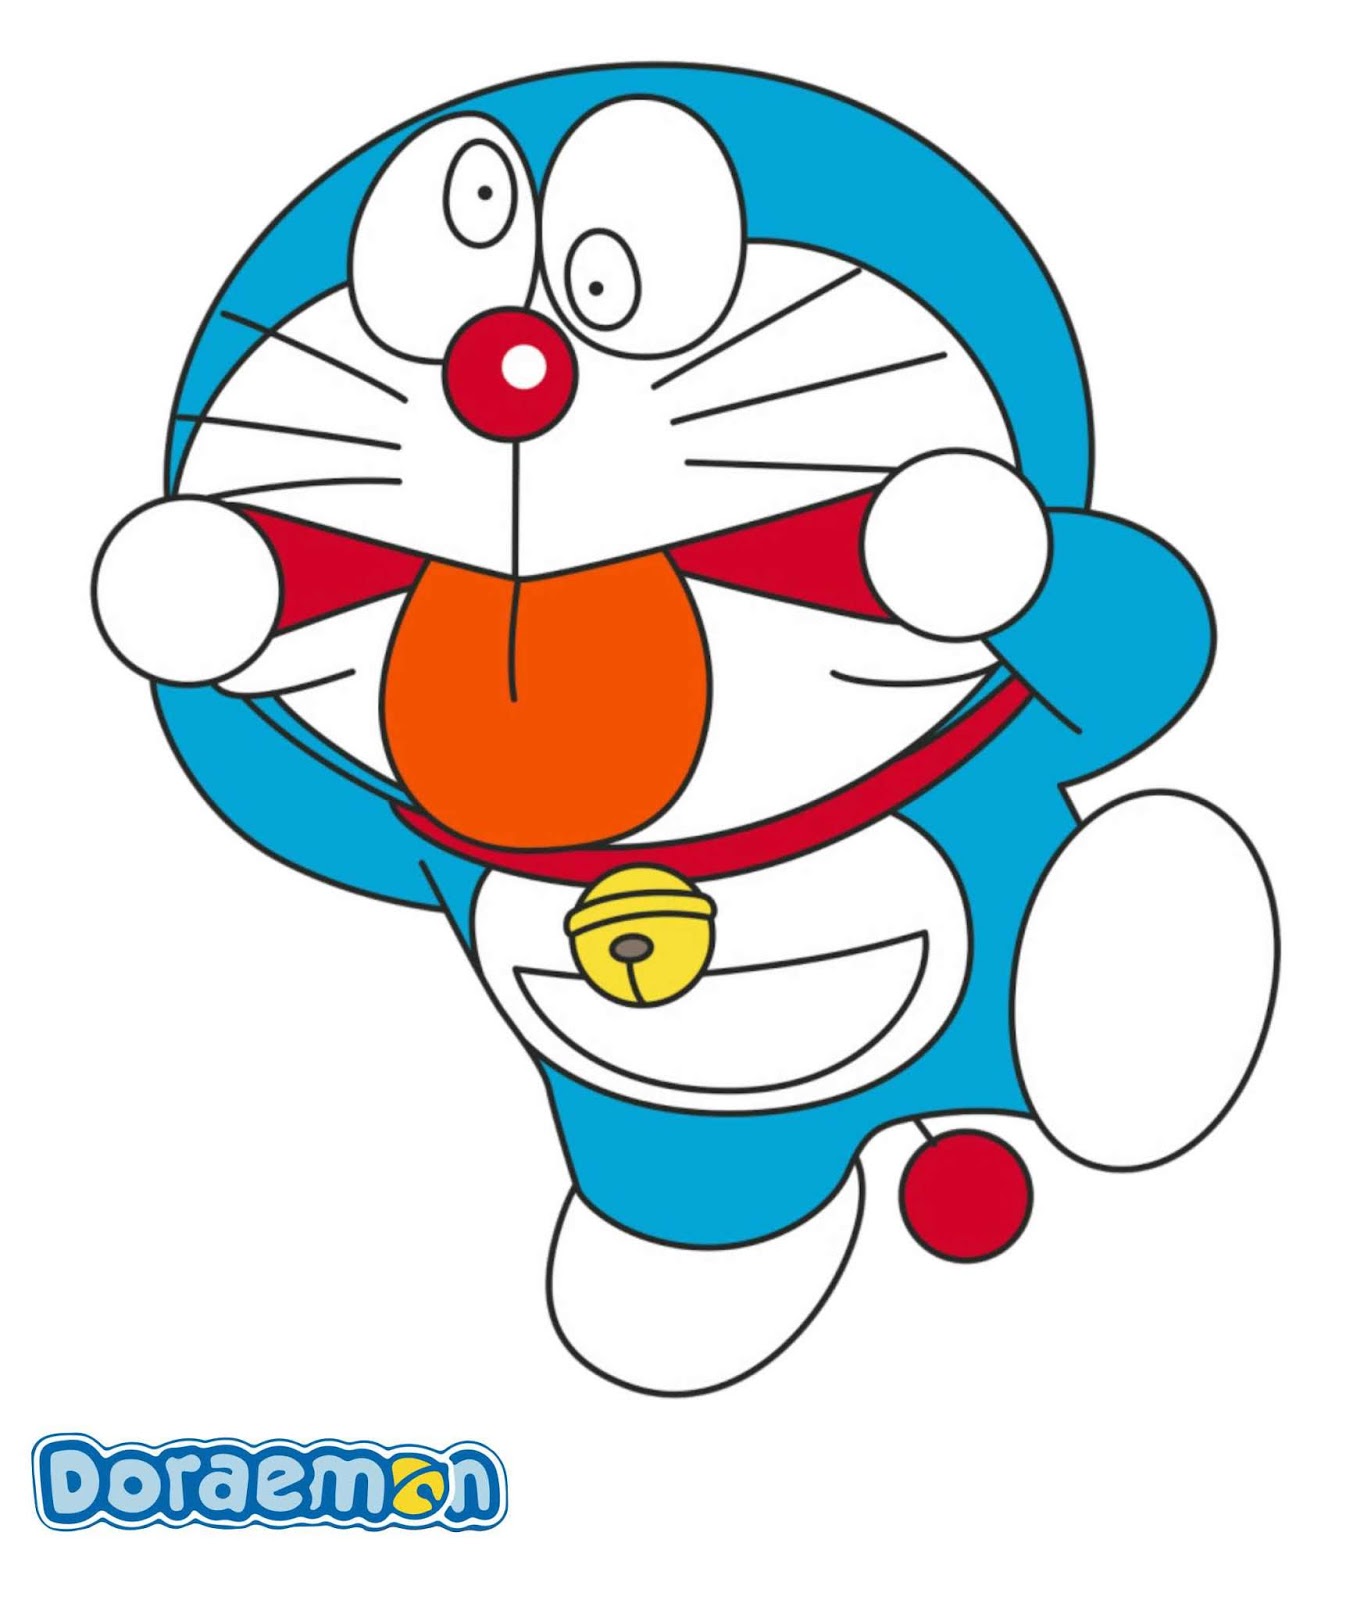 54 Gambar Kartun Doraemon Lucu Dan Imut Terbaru 2020 Gambar Lucu Terbaru